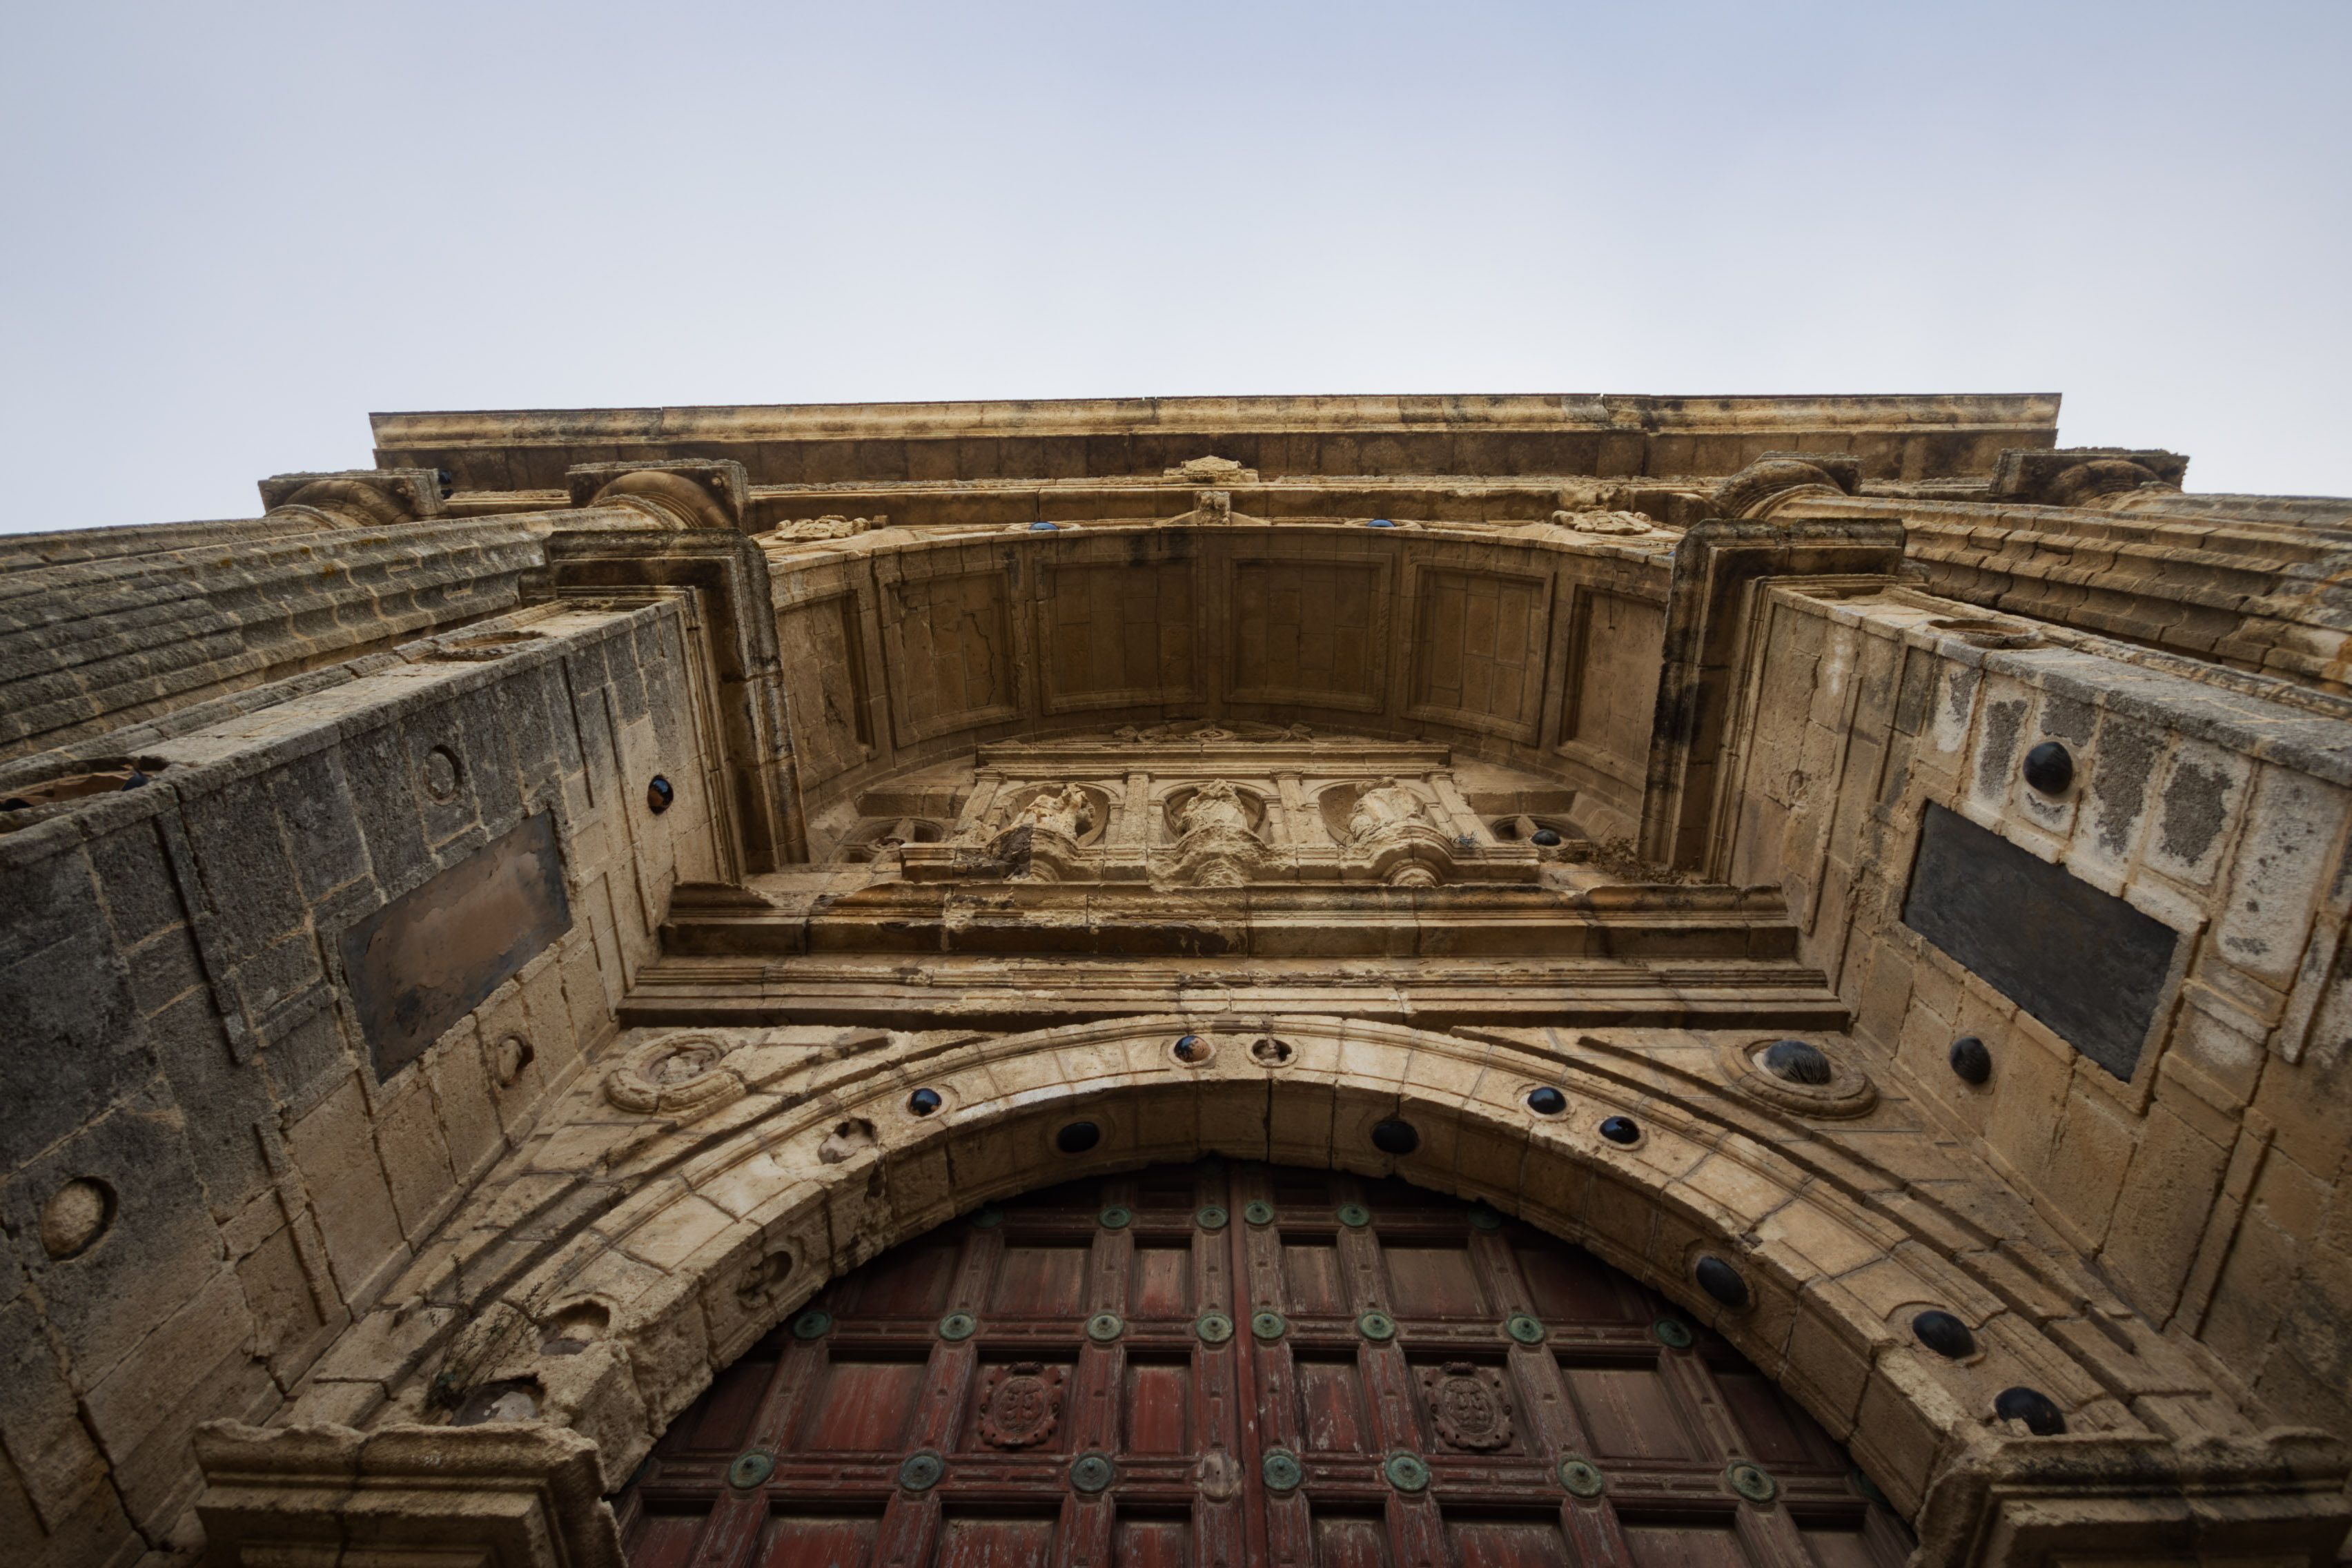 Vista de la parte superior del pórtico de entrada al monasterio de la Cartuja en Jerez, en una imagen reciente.